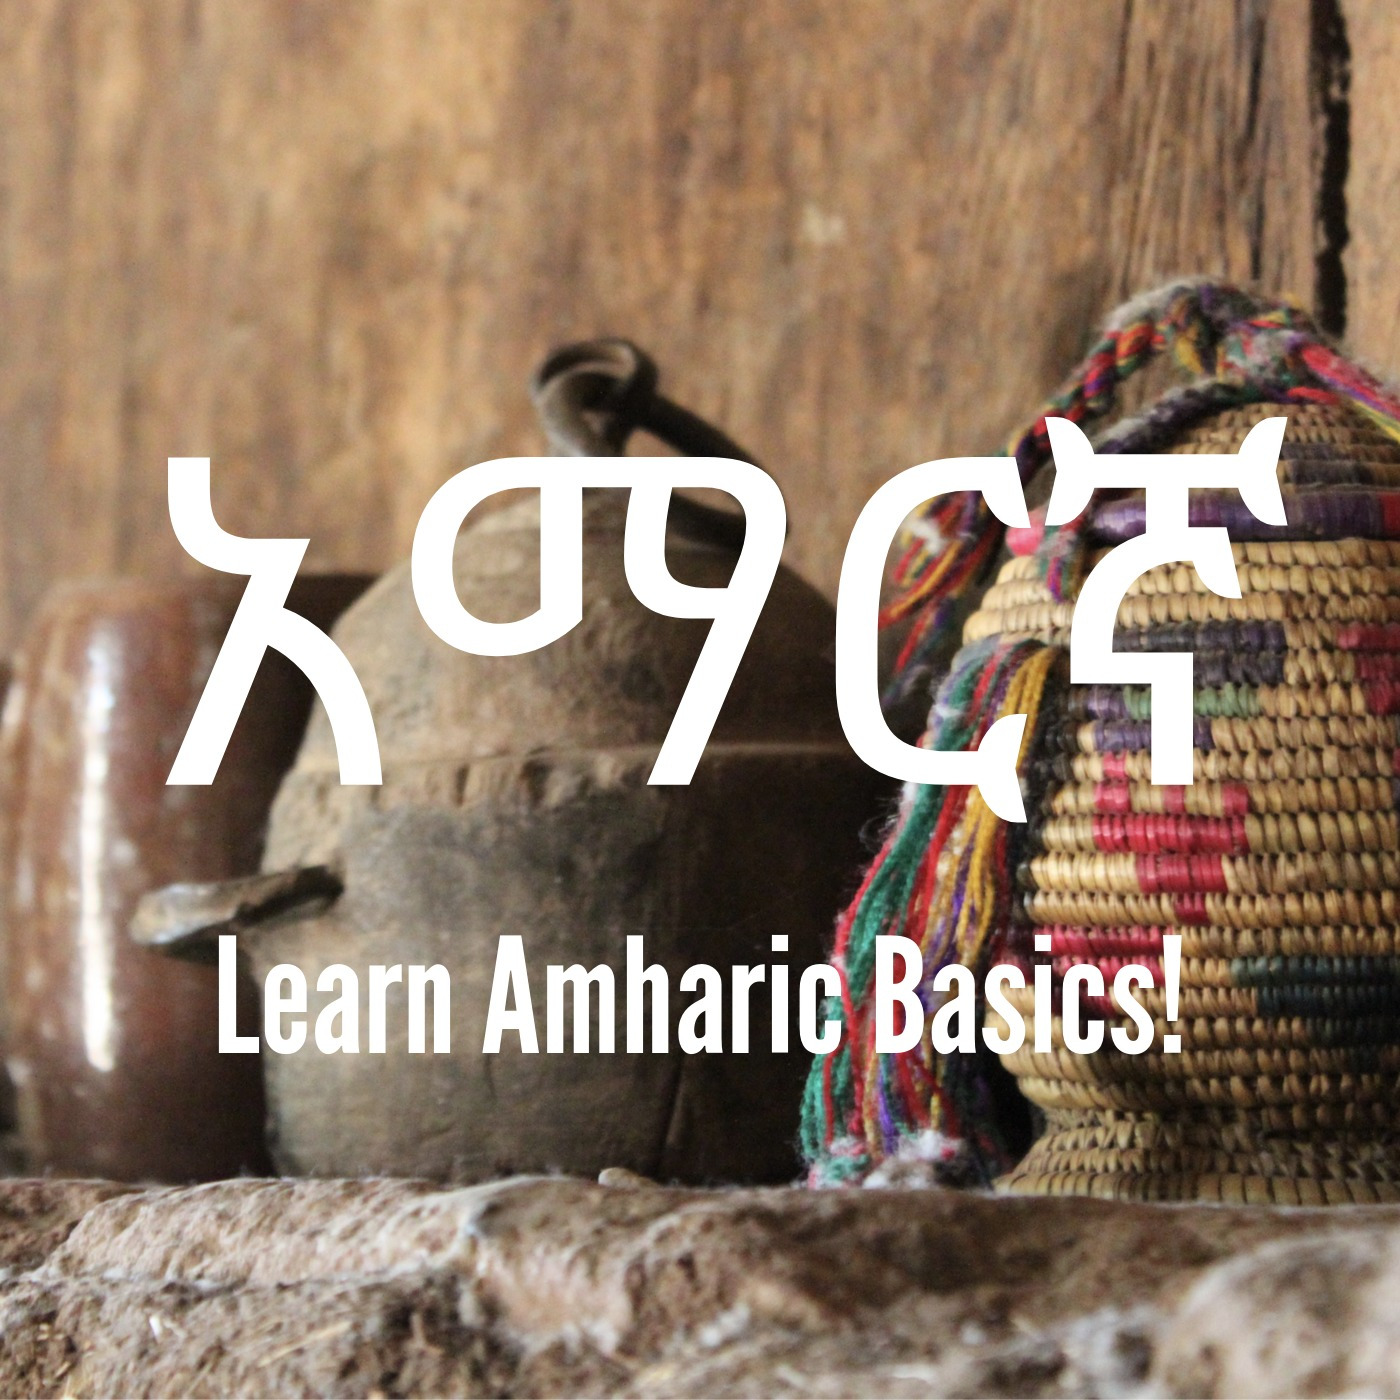 Learn Amharic Basics! - Unit 4